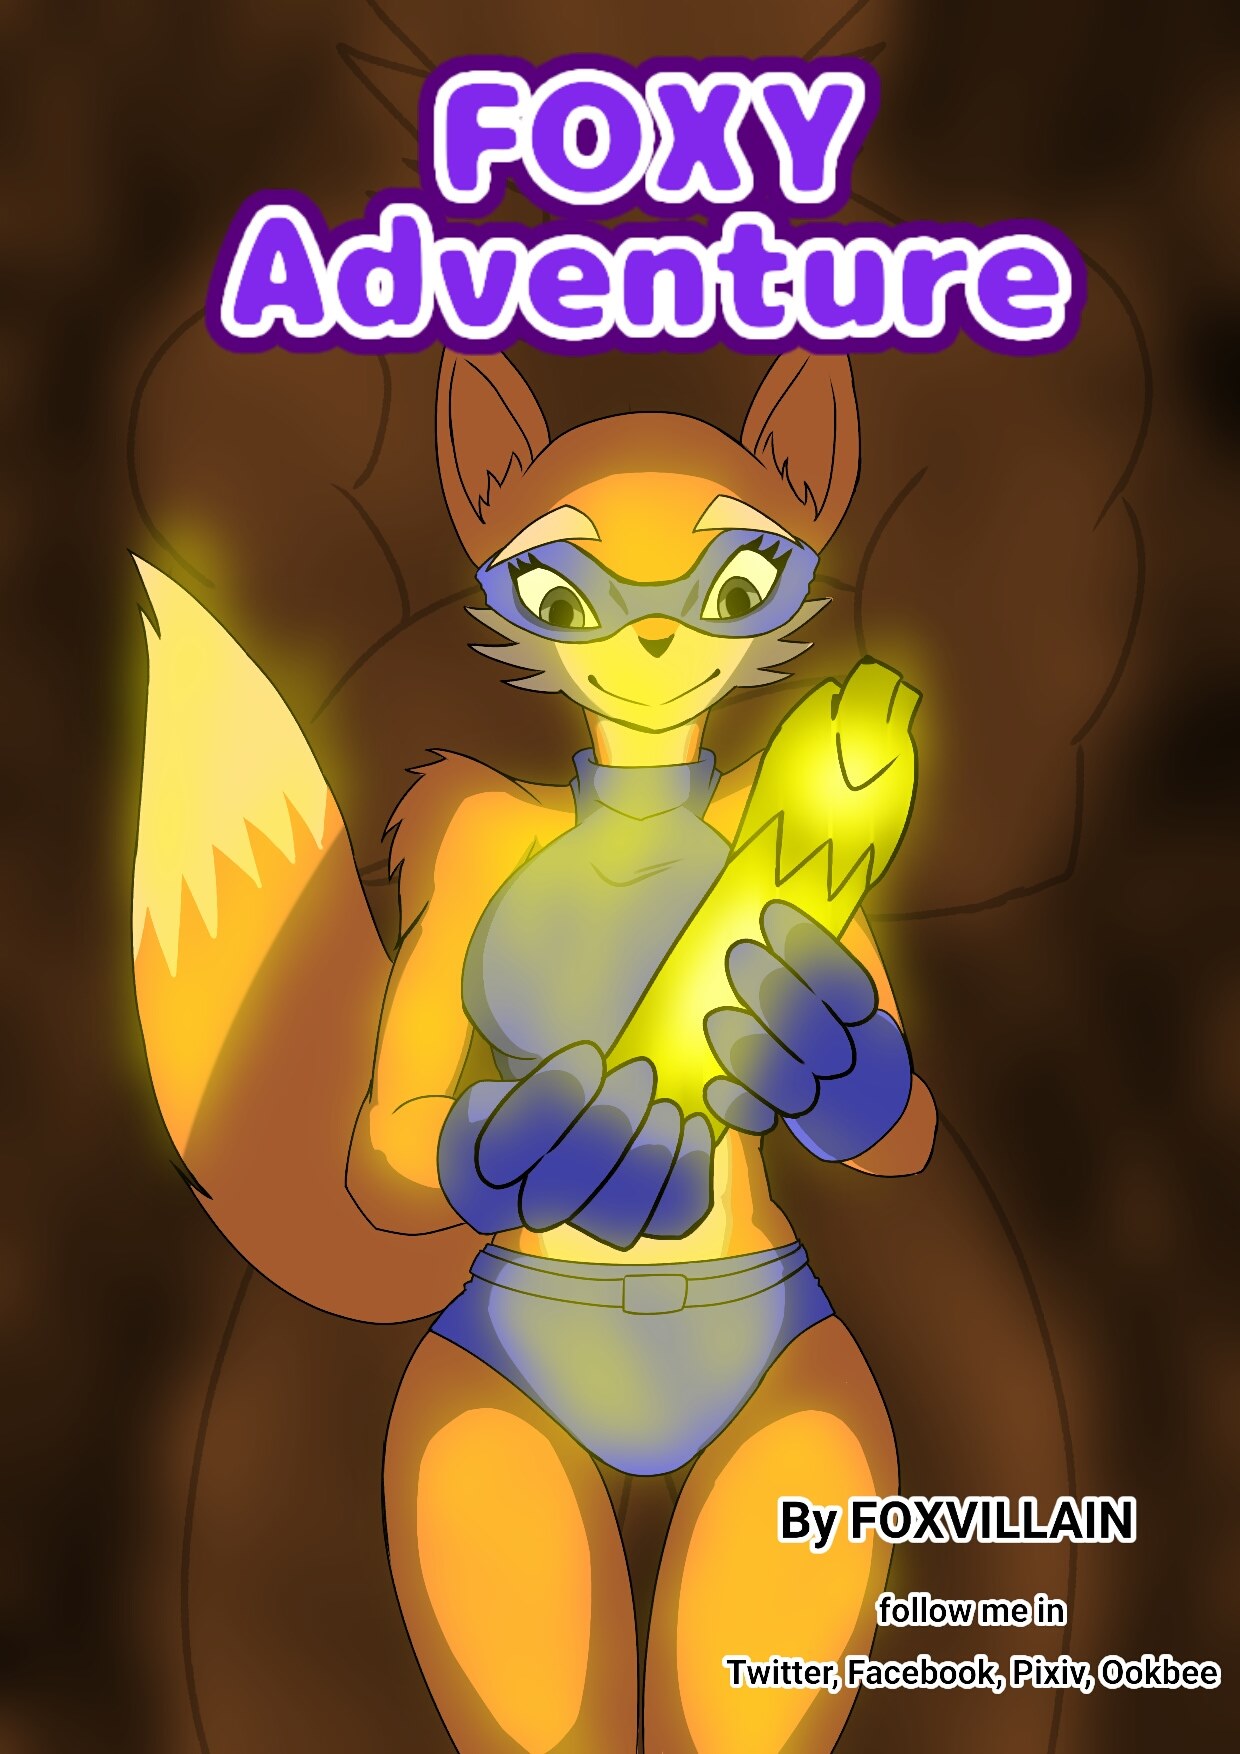 FoxVillain - Foxy Adventure